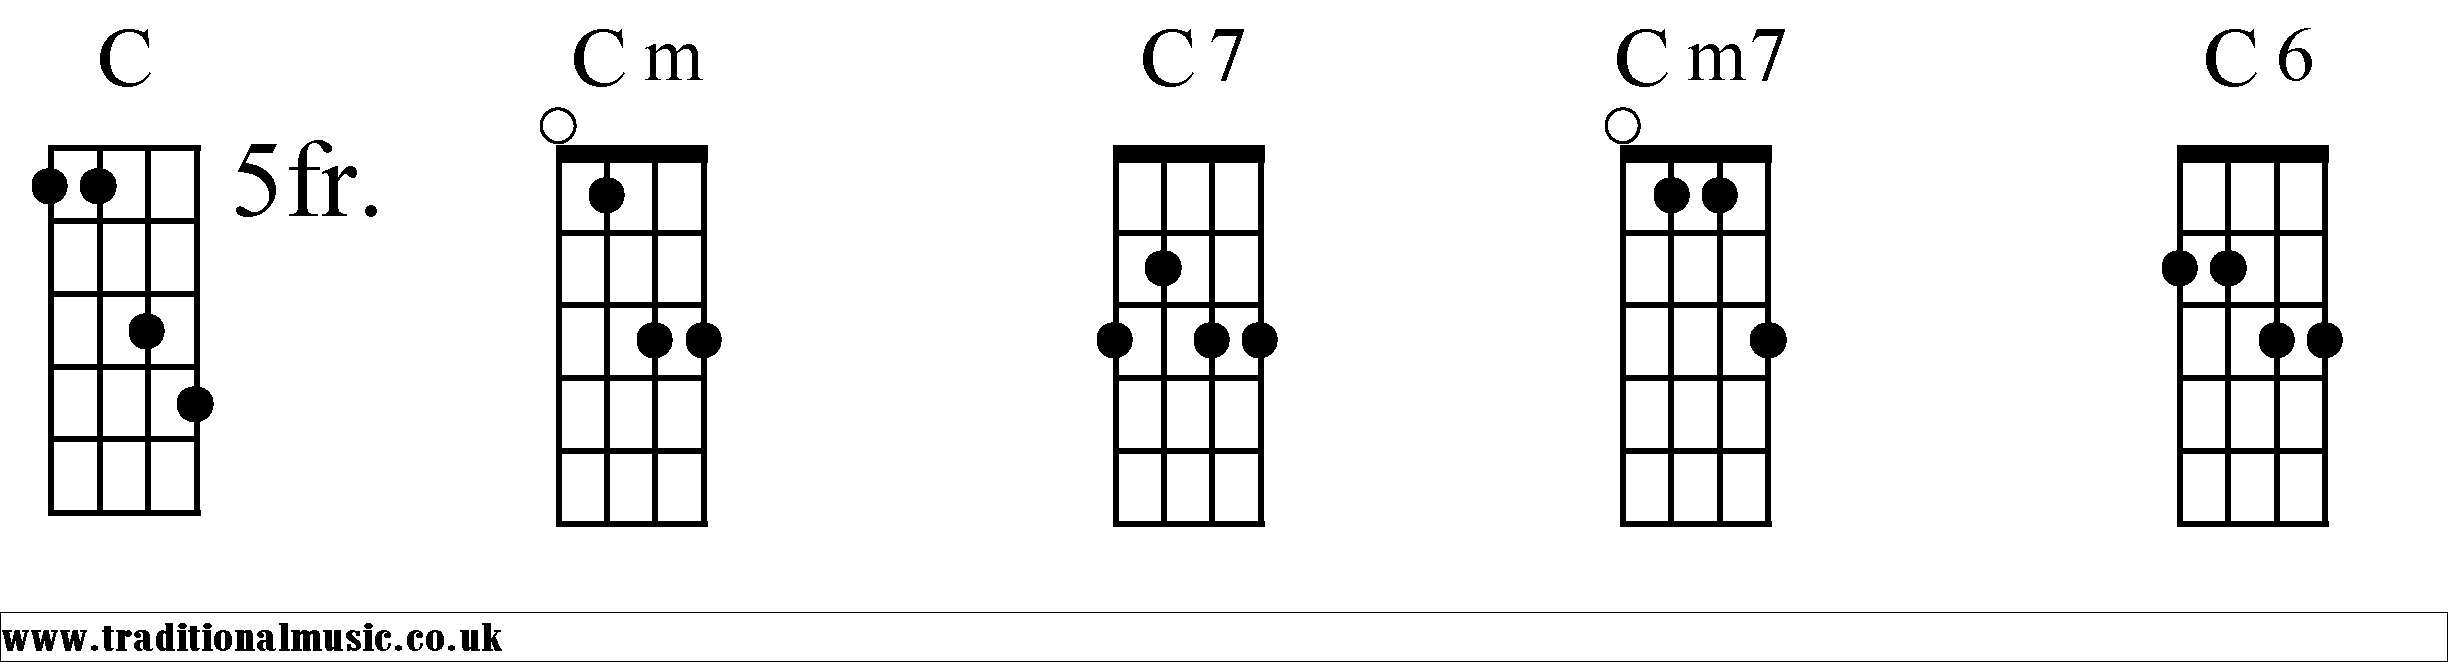 C Chords diagrams Mandolin 1